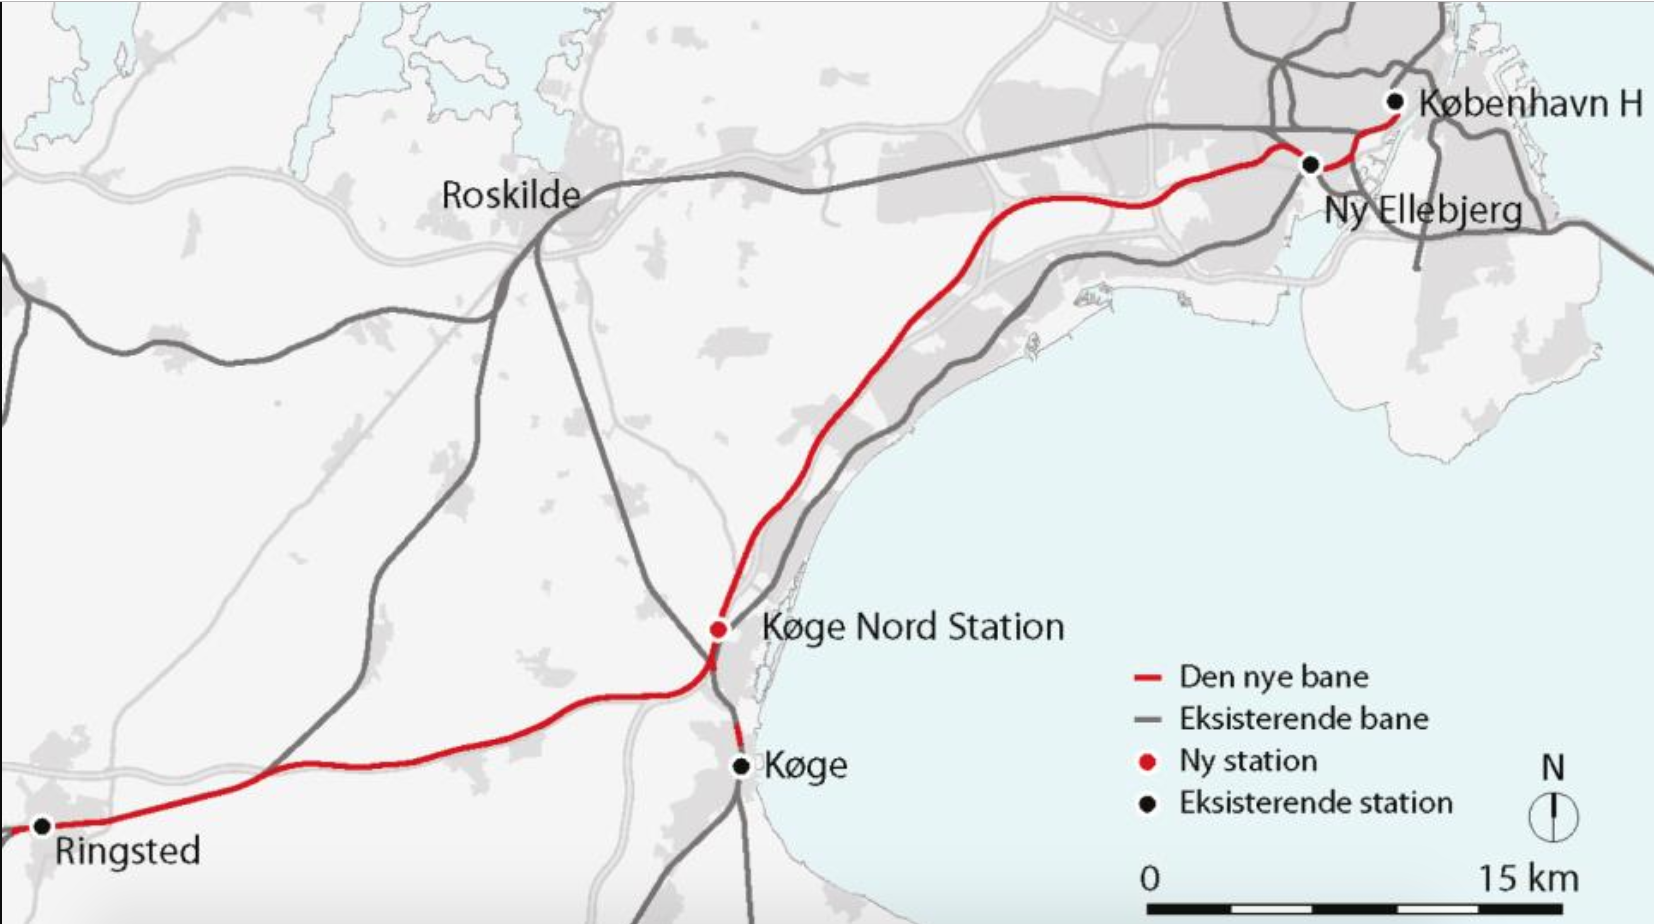 Первую высокоскоростную железную дорогу открыли в Дании